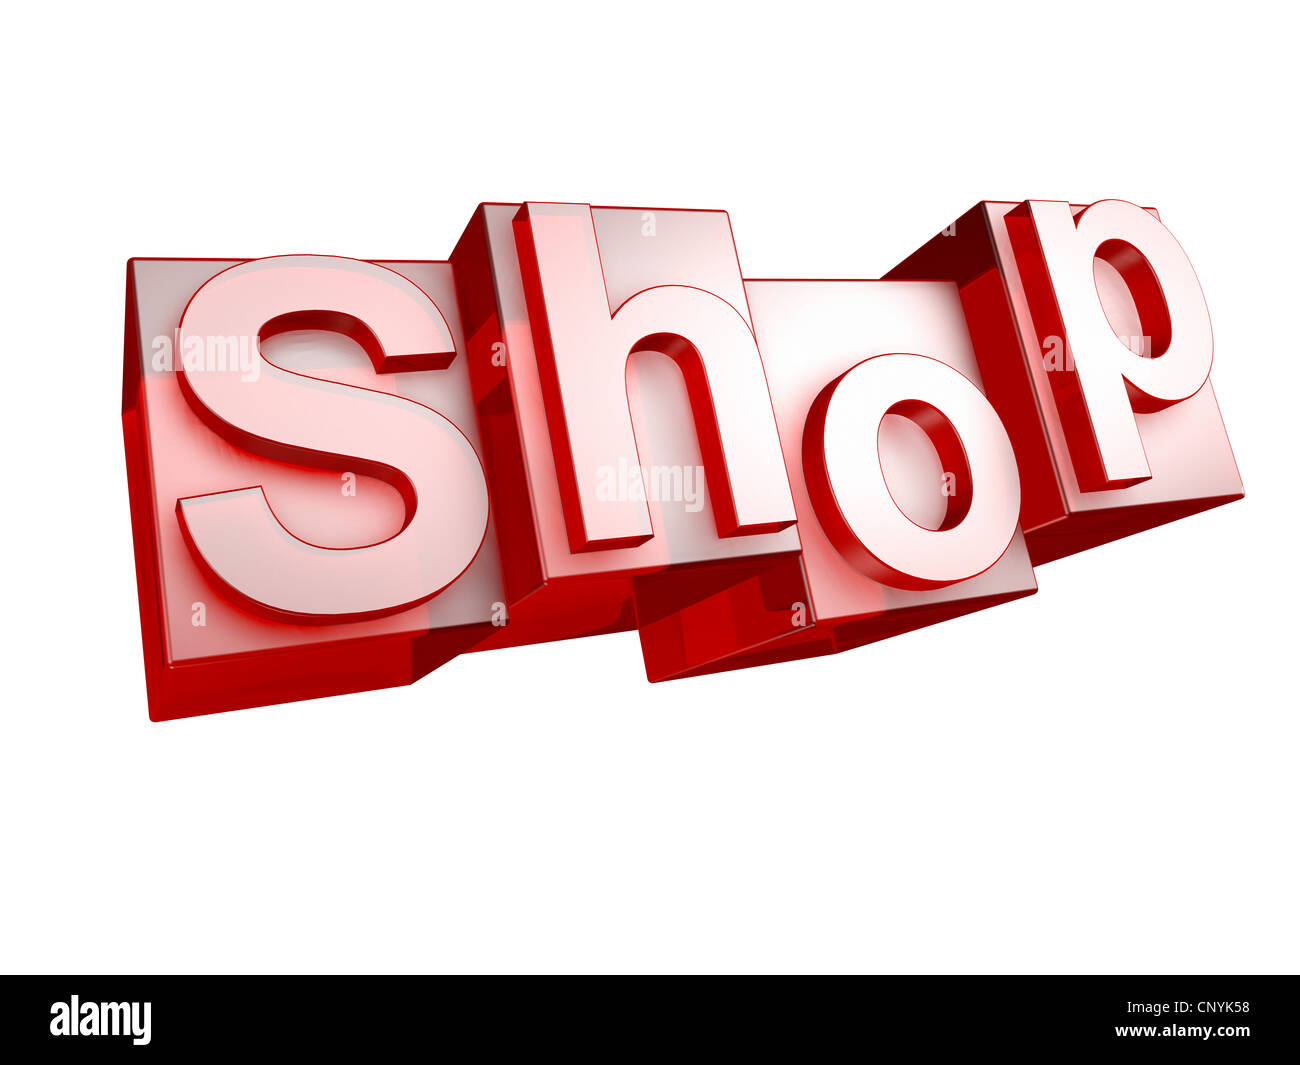 Le mot boutique en 3D lettres sur fond blanc - das Wort SHOP aus 3D Buchstaben, freigestellt gesetzt auf weißem Hintergrund Banque D'Images